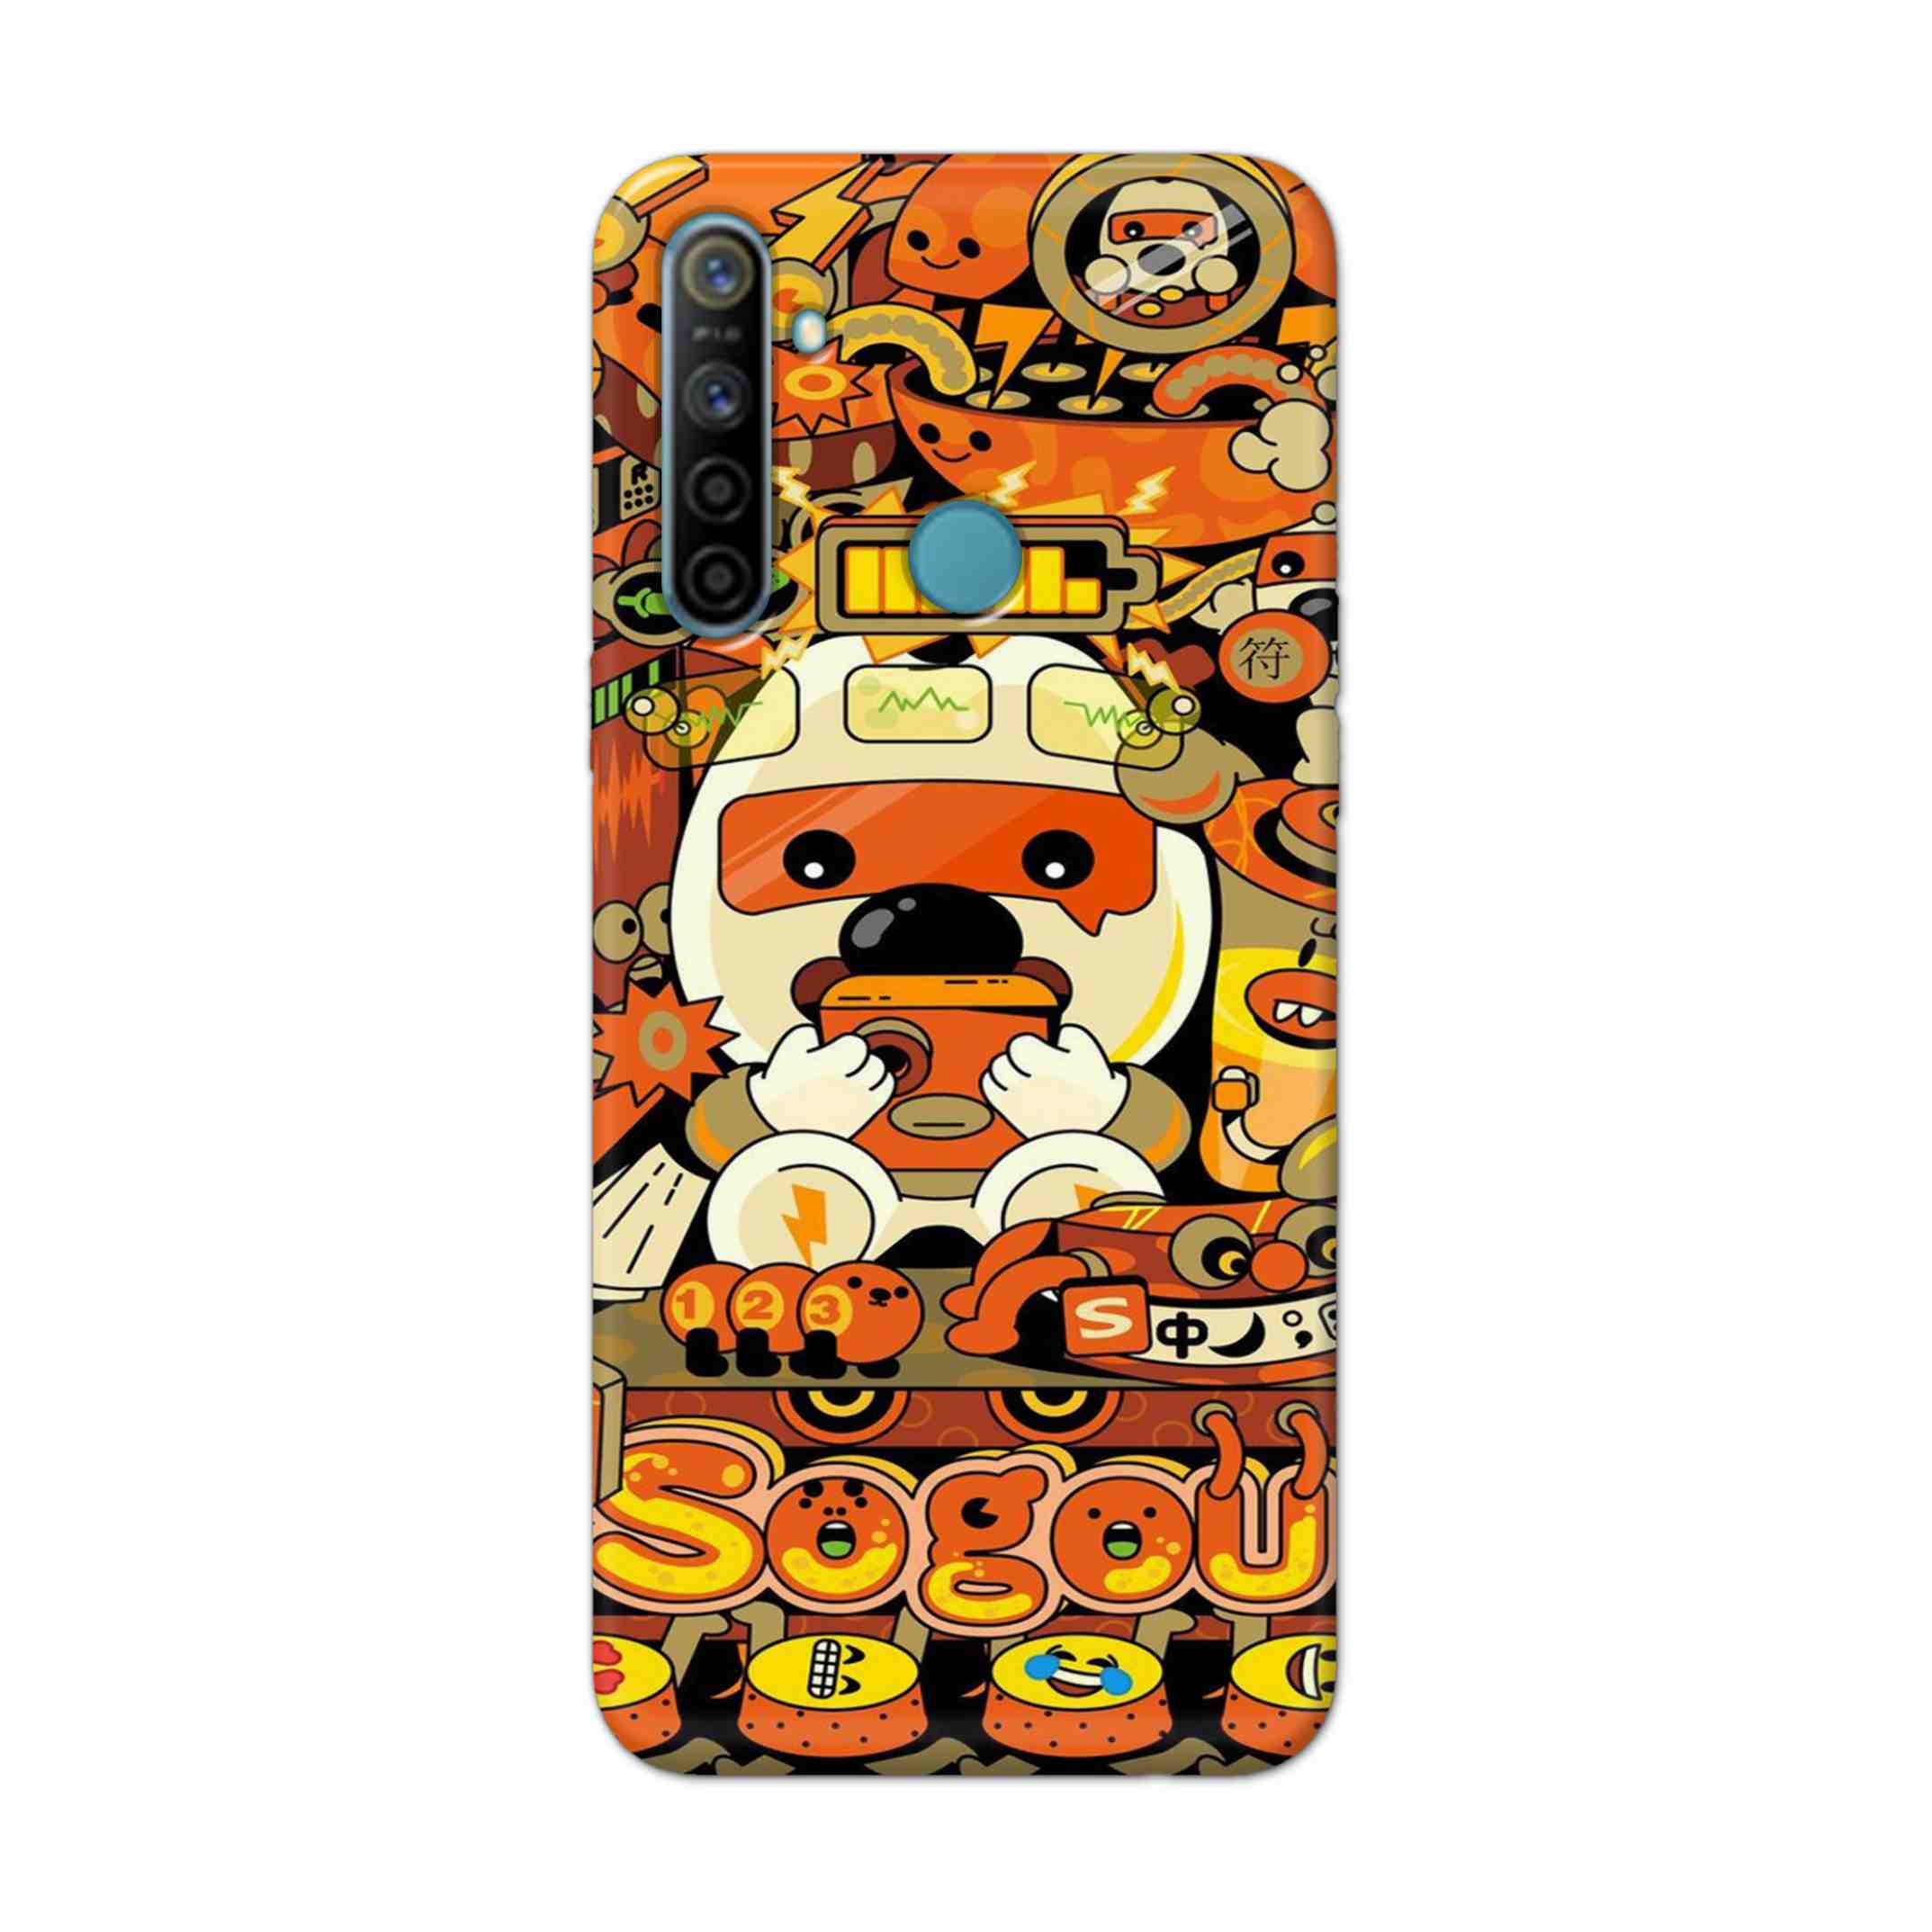 Buy Sogou Hard Back Mobile Phone Case Cover For Realme 5i Online